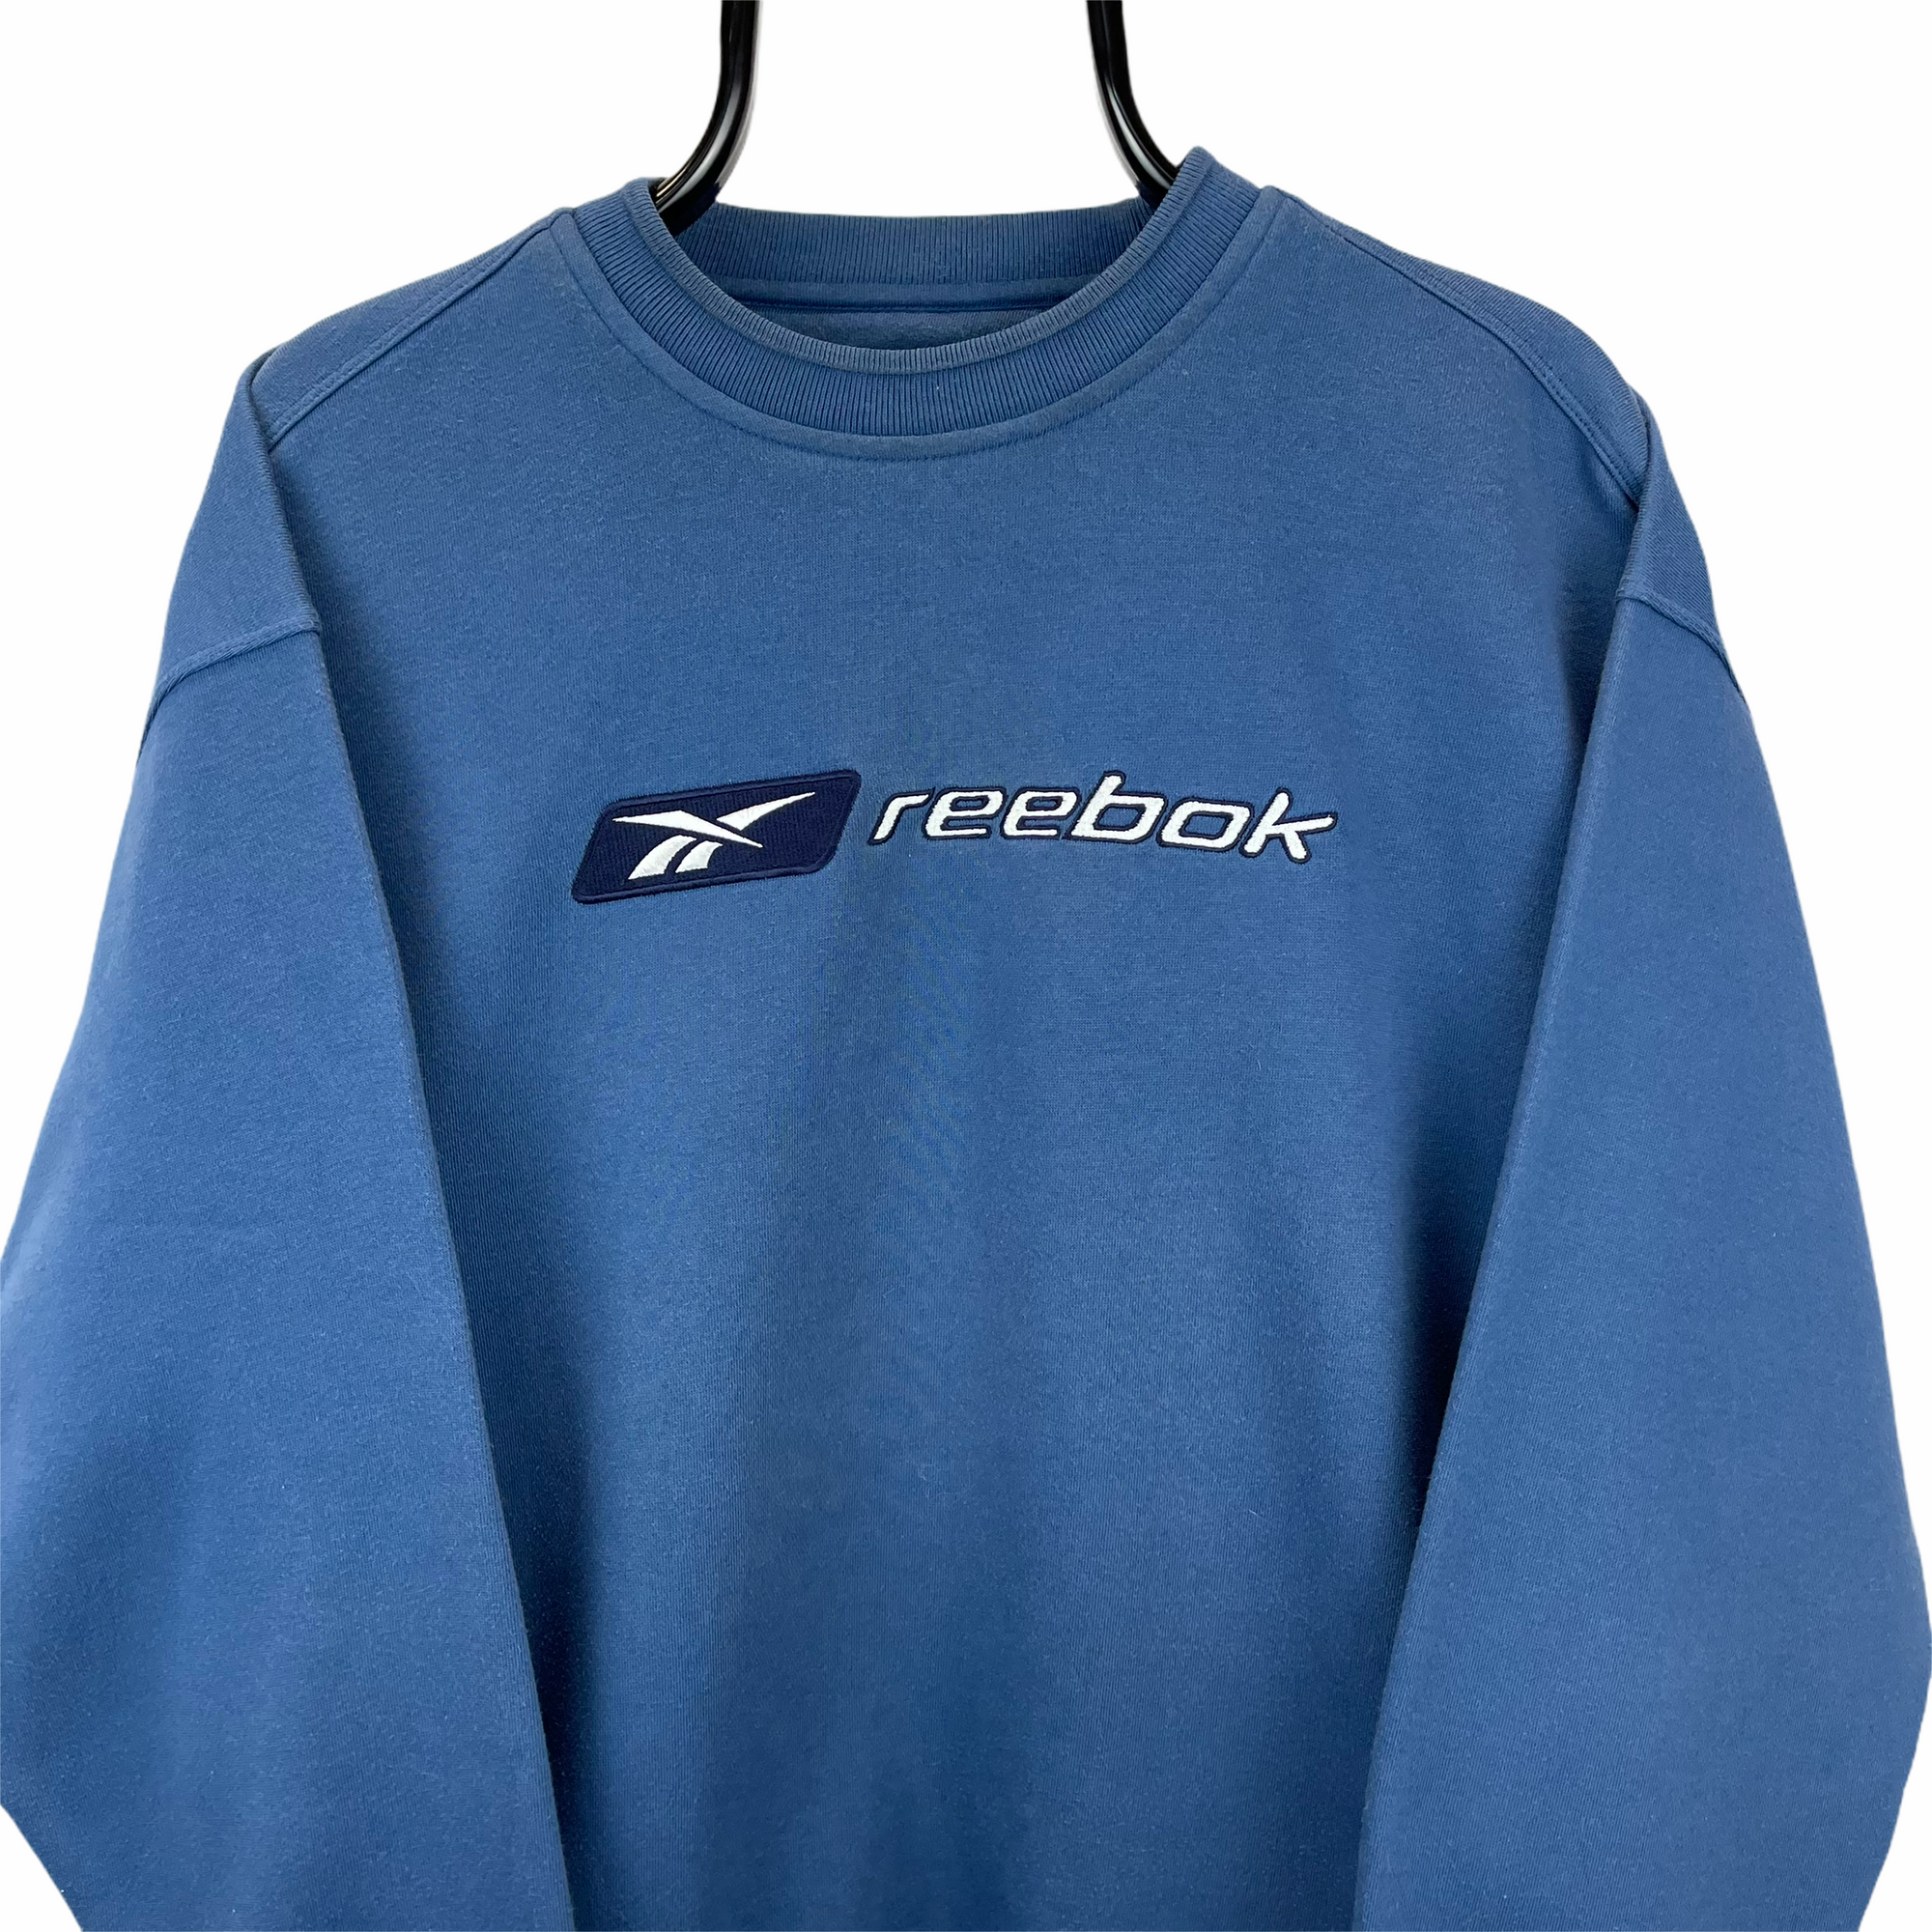 Vintage 90s Reebok Spellout Sweatshirt in Deep Blue - Men's Large/Women's XL